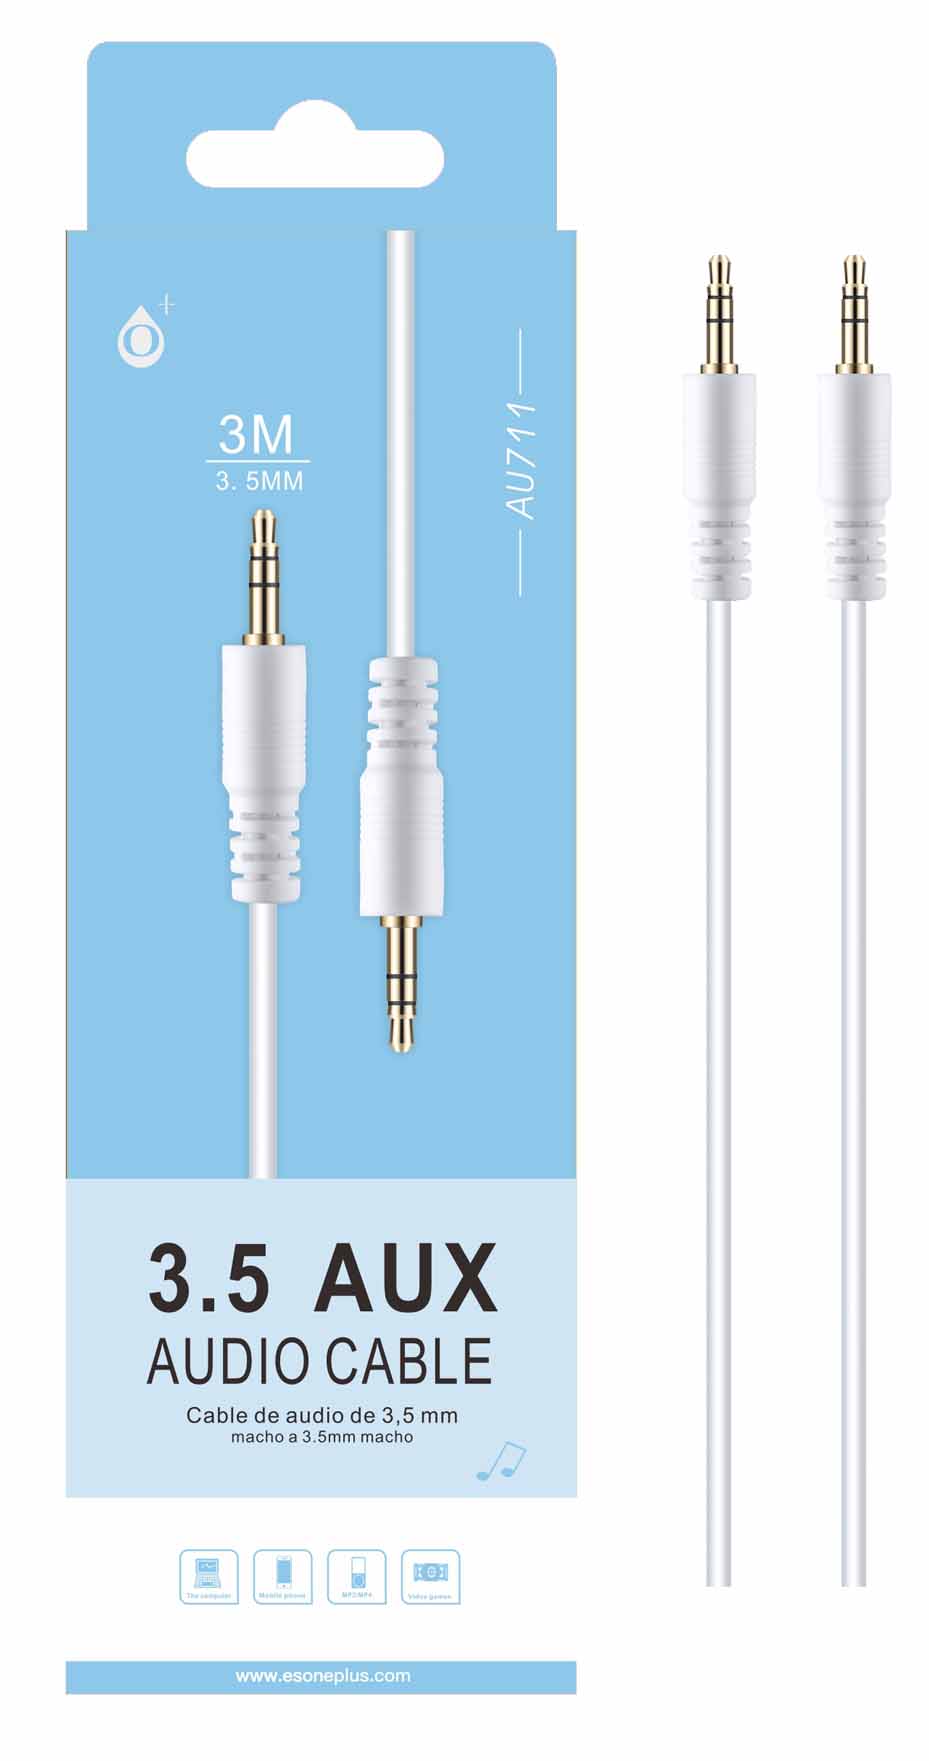 AU711 BL Cable de Audio Jinx M/M 3.5mm, 3M Blanco